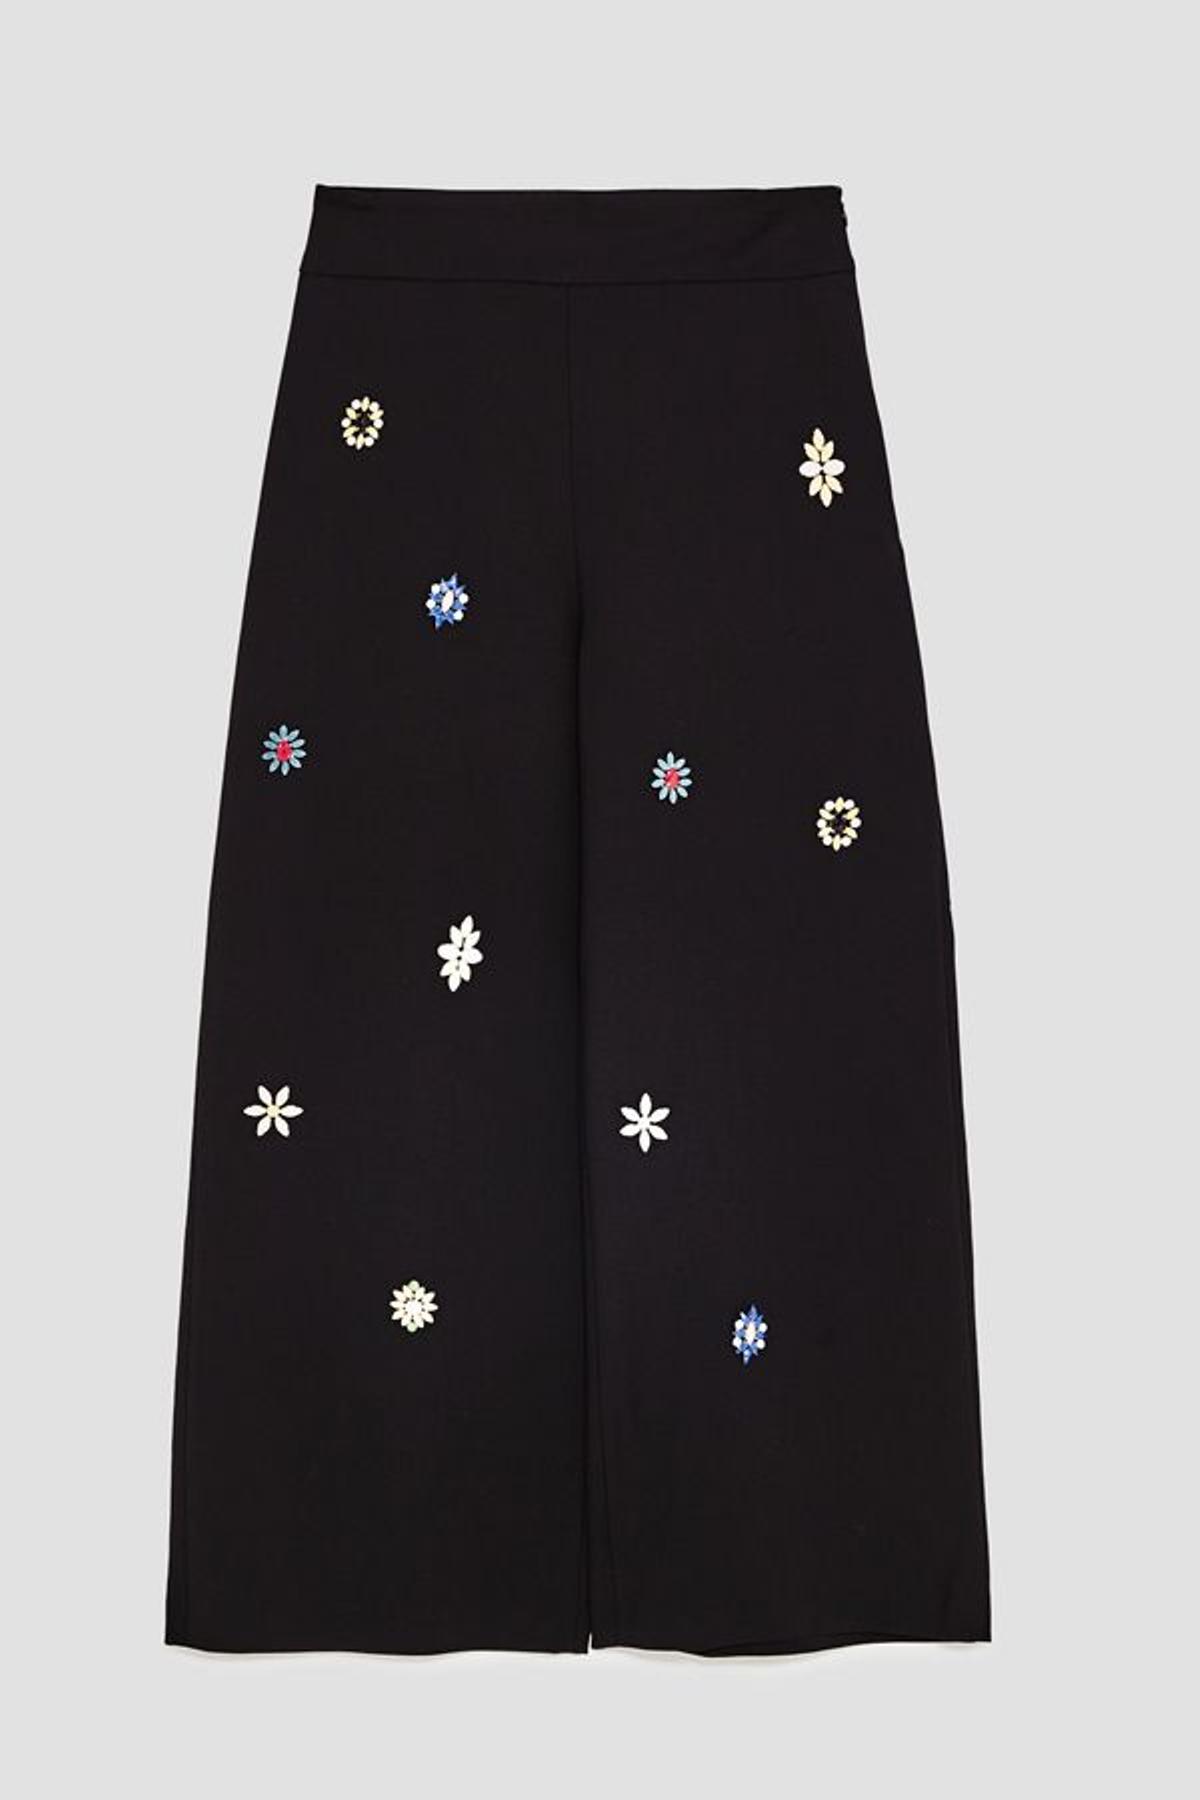 Nuevo en tienda: culottes de joyas de Zara